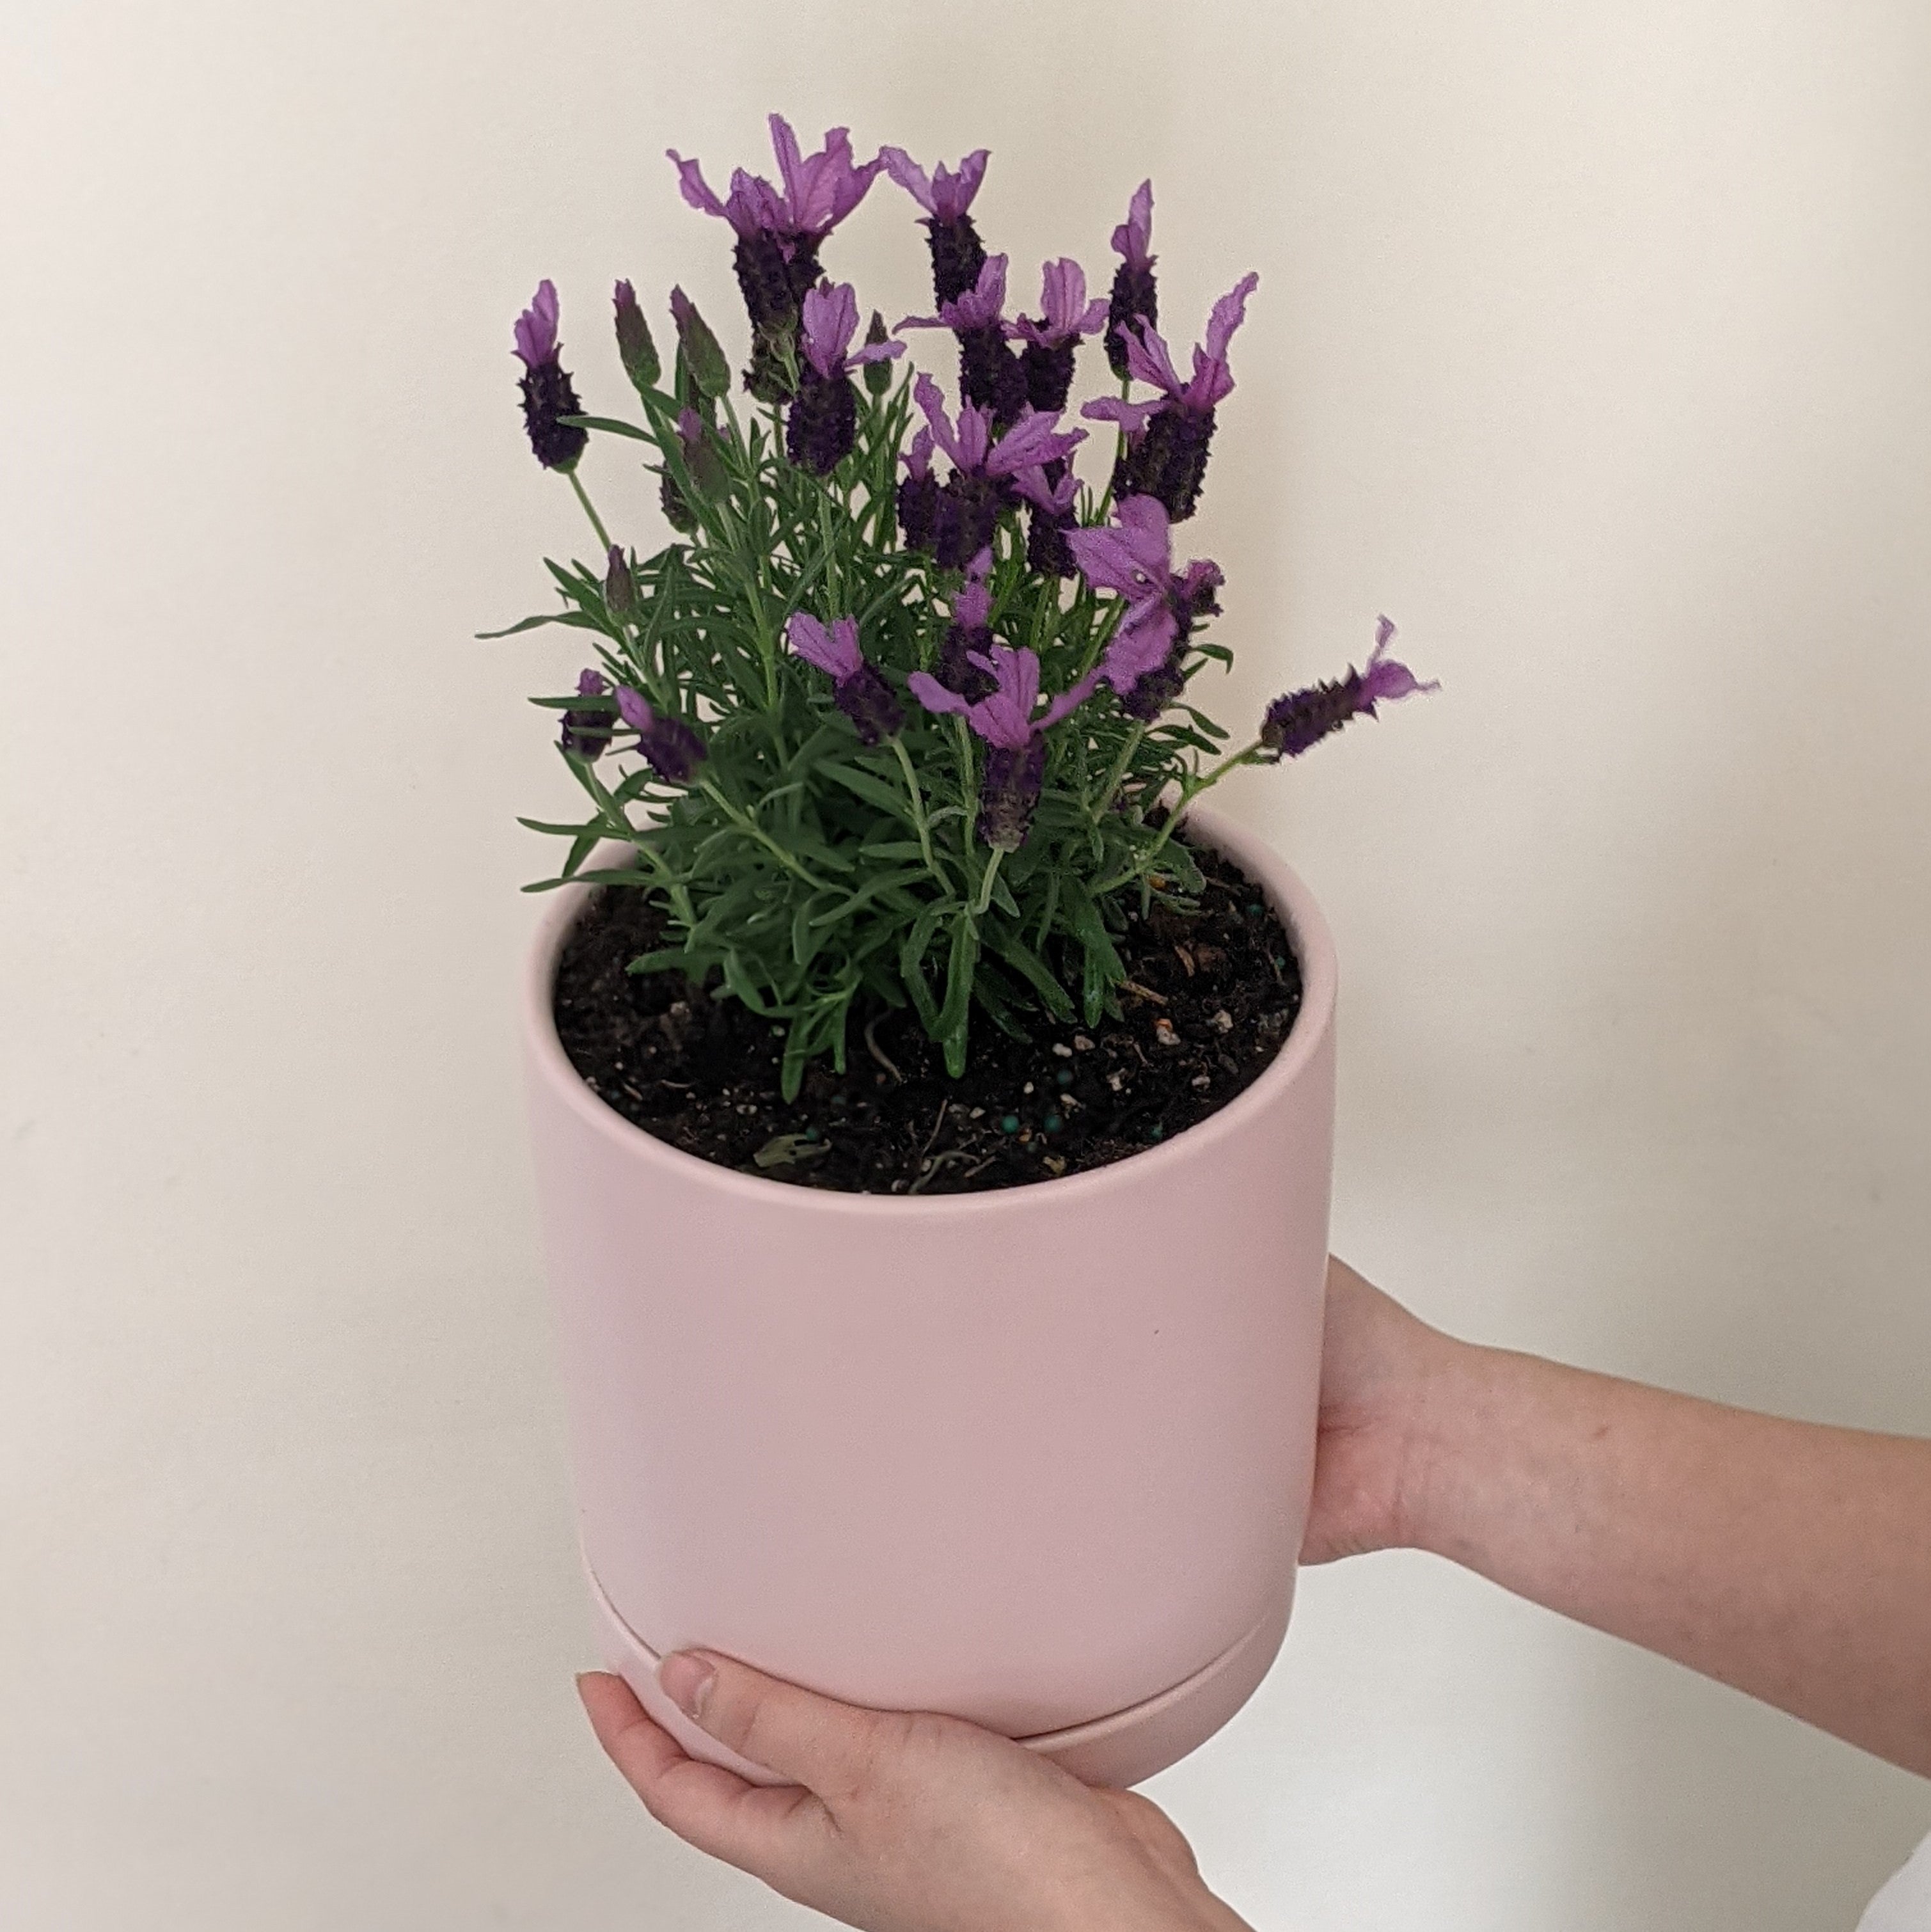 Growing Lavender Indoors